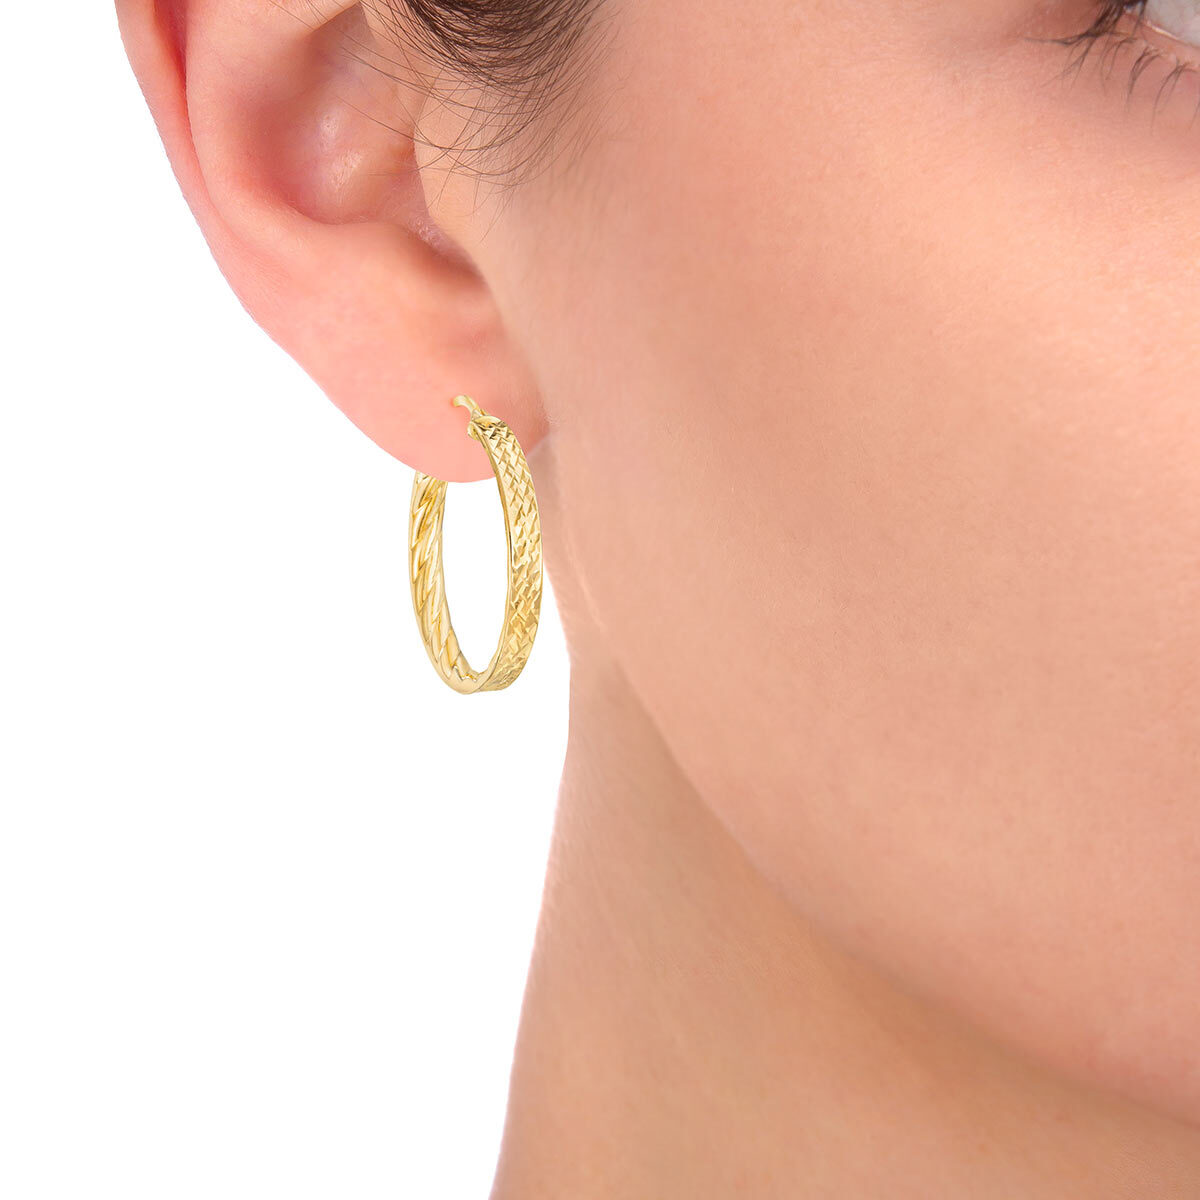 14ct Yellow Gold Hoop Earrings